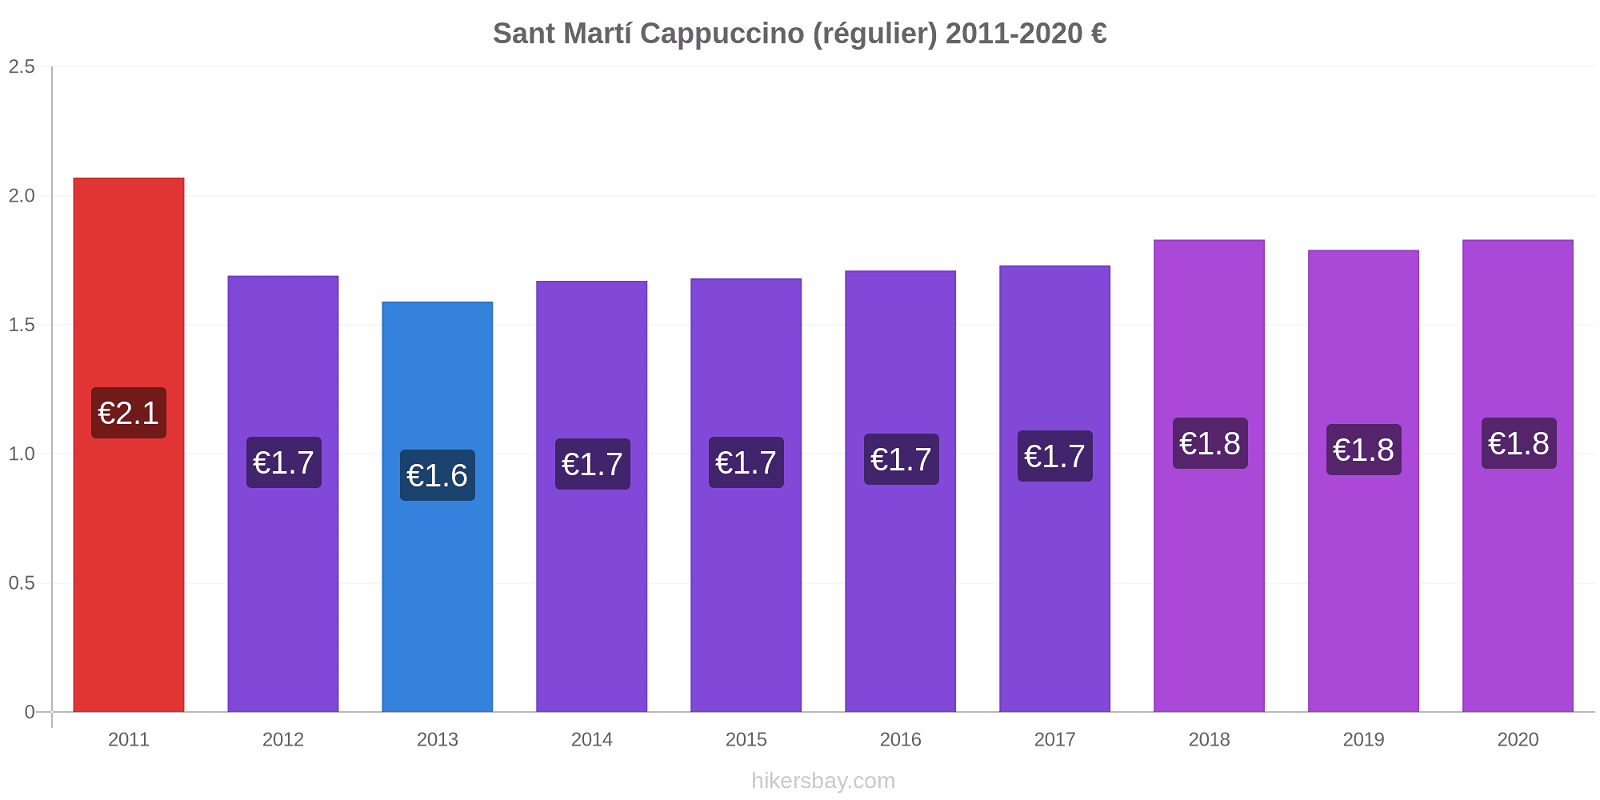 Sant Martí changements de prix Cappuccino (régulier) hikersbay.com